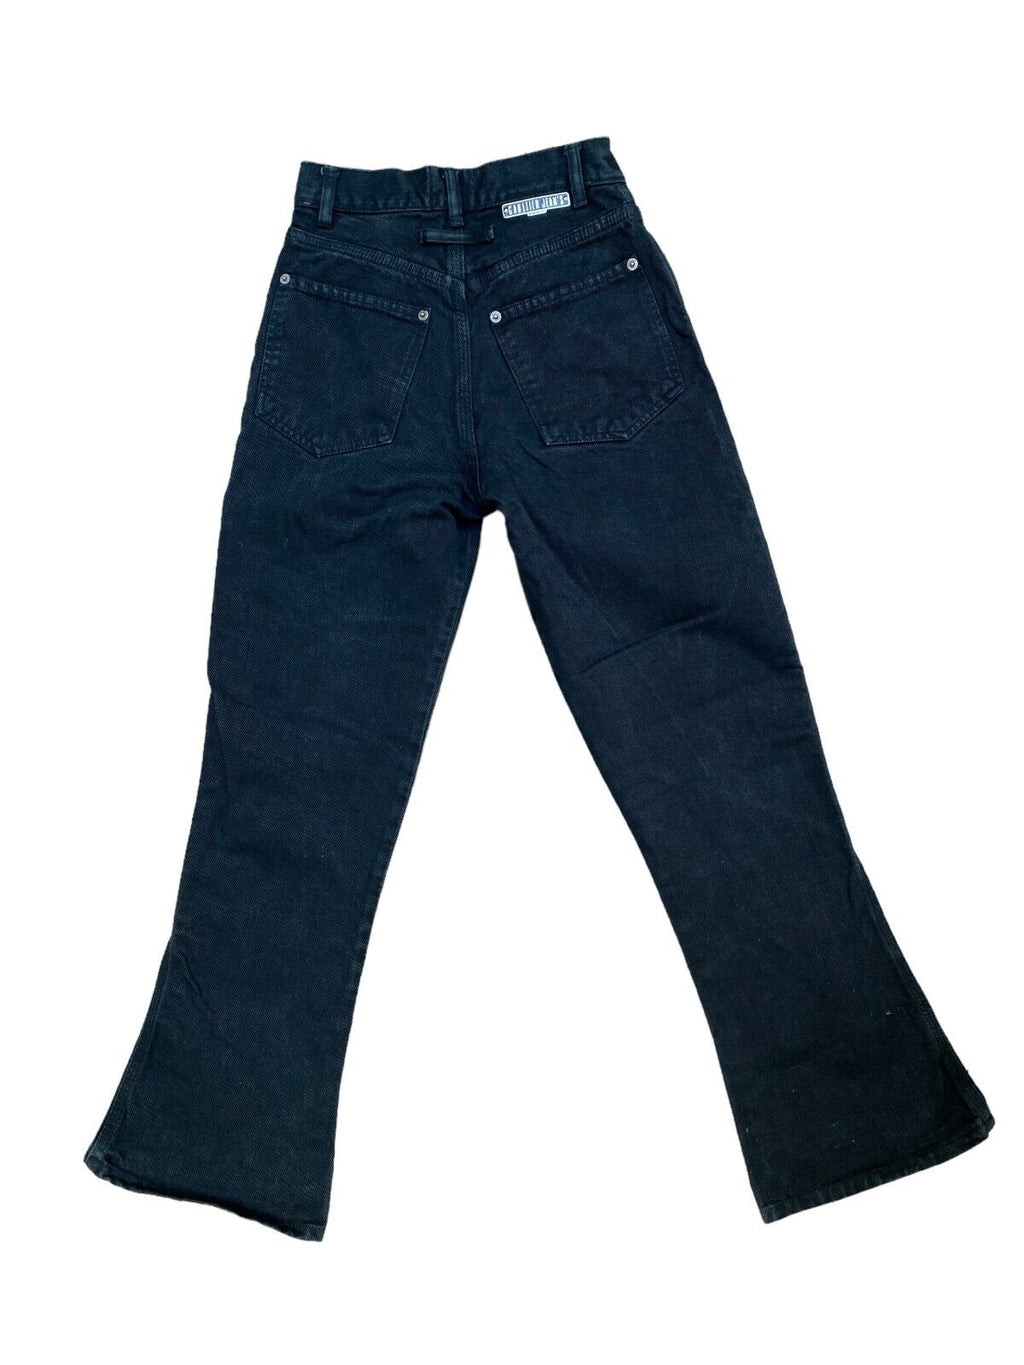 Vintage Flack Flare Denim Jeans Size US 25